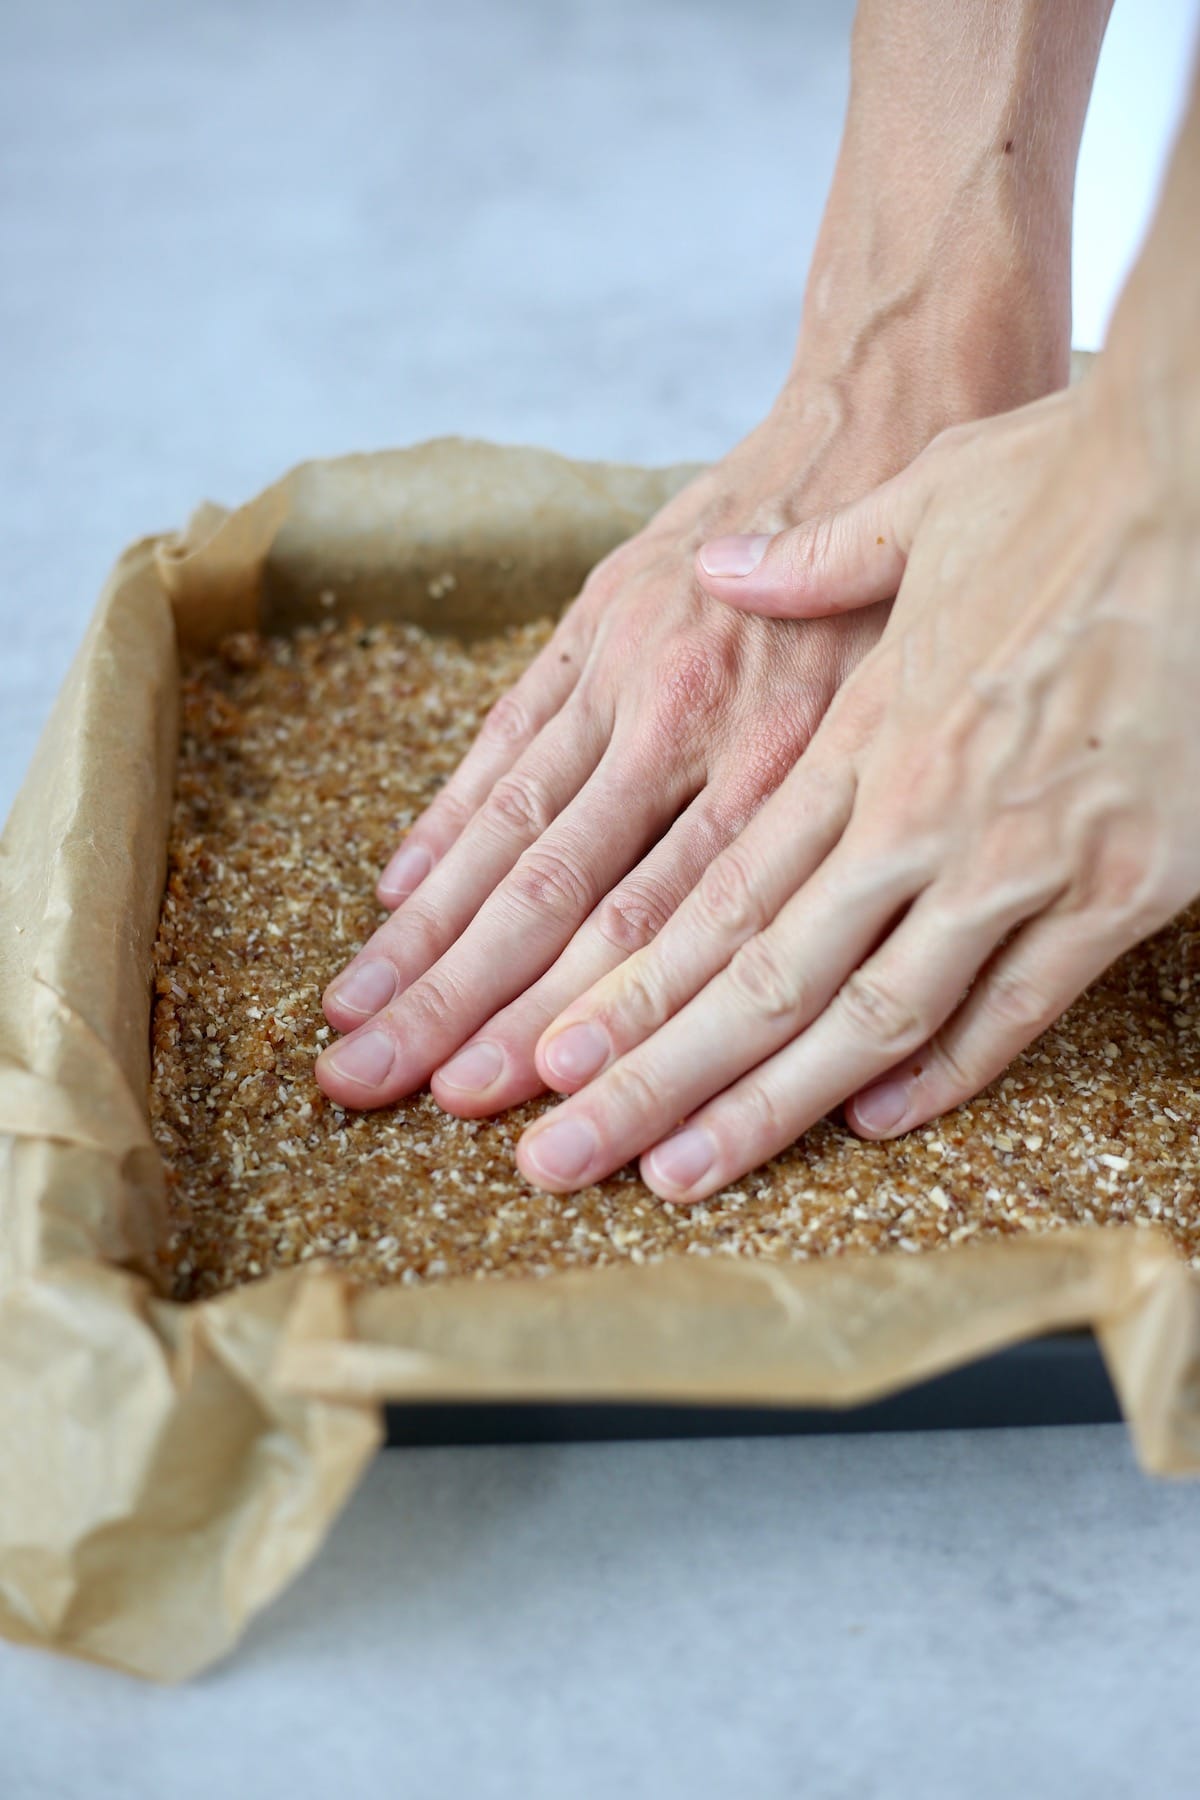 Pressing dough into a pan for granola bars